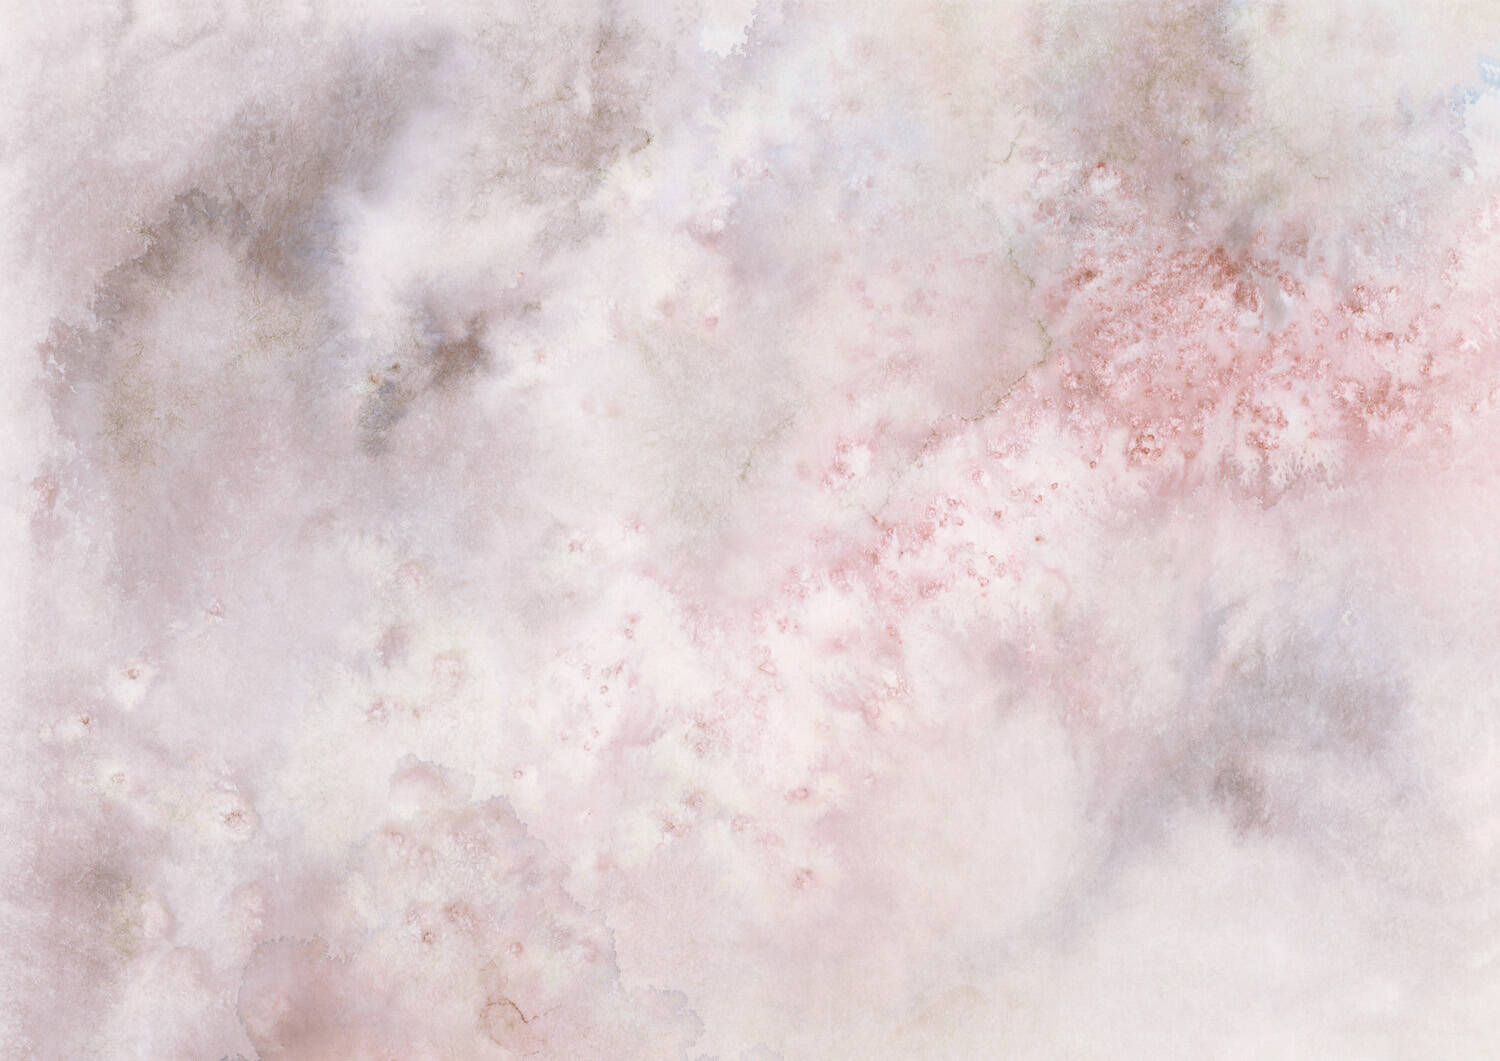 Wandbild - Wolkiges Aquarell in grau, rosé und weiß mit spannenden Farbverläufen 